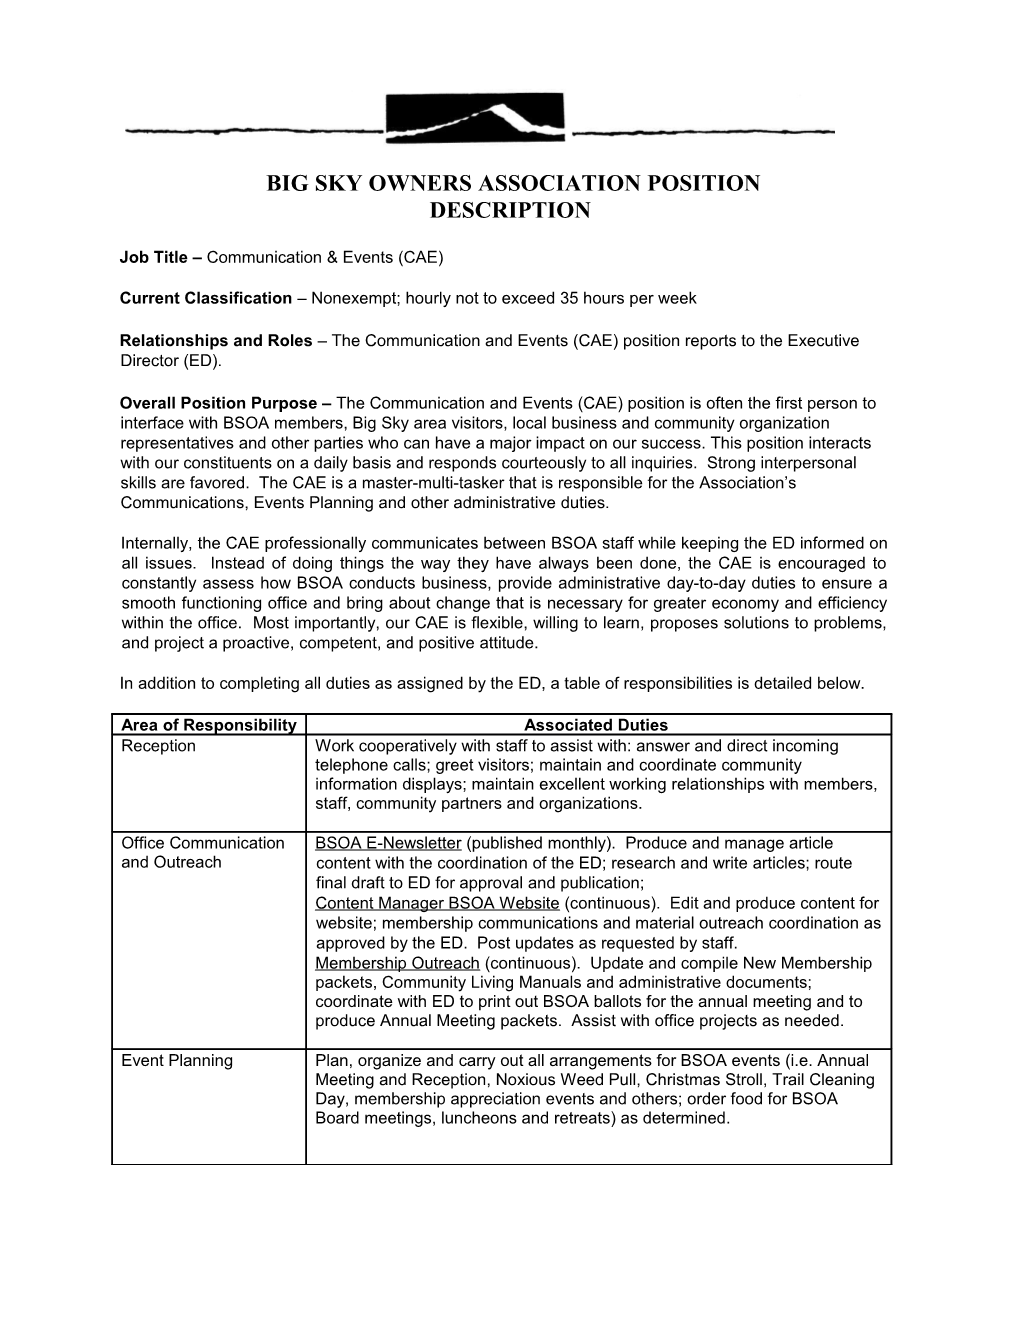 Big Sky Owners Association Position Description